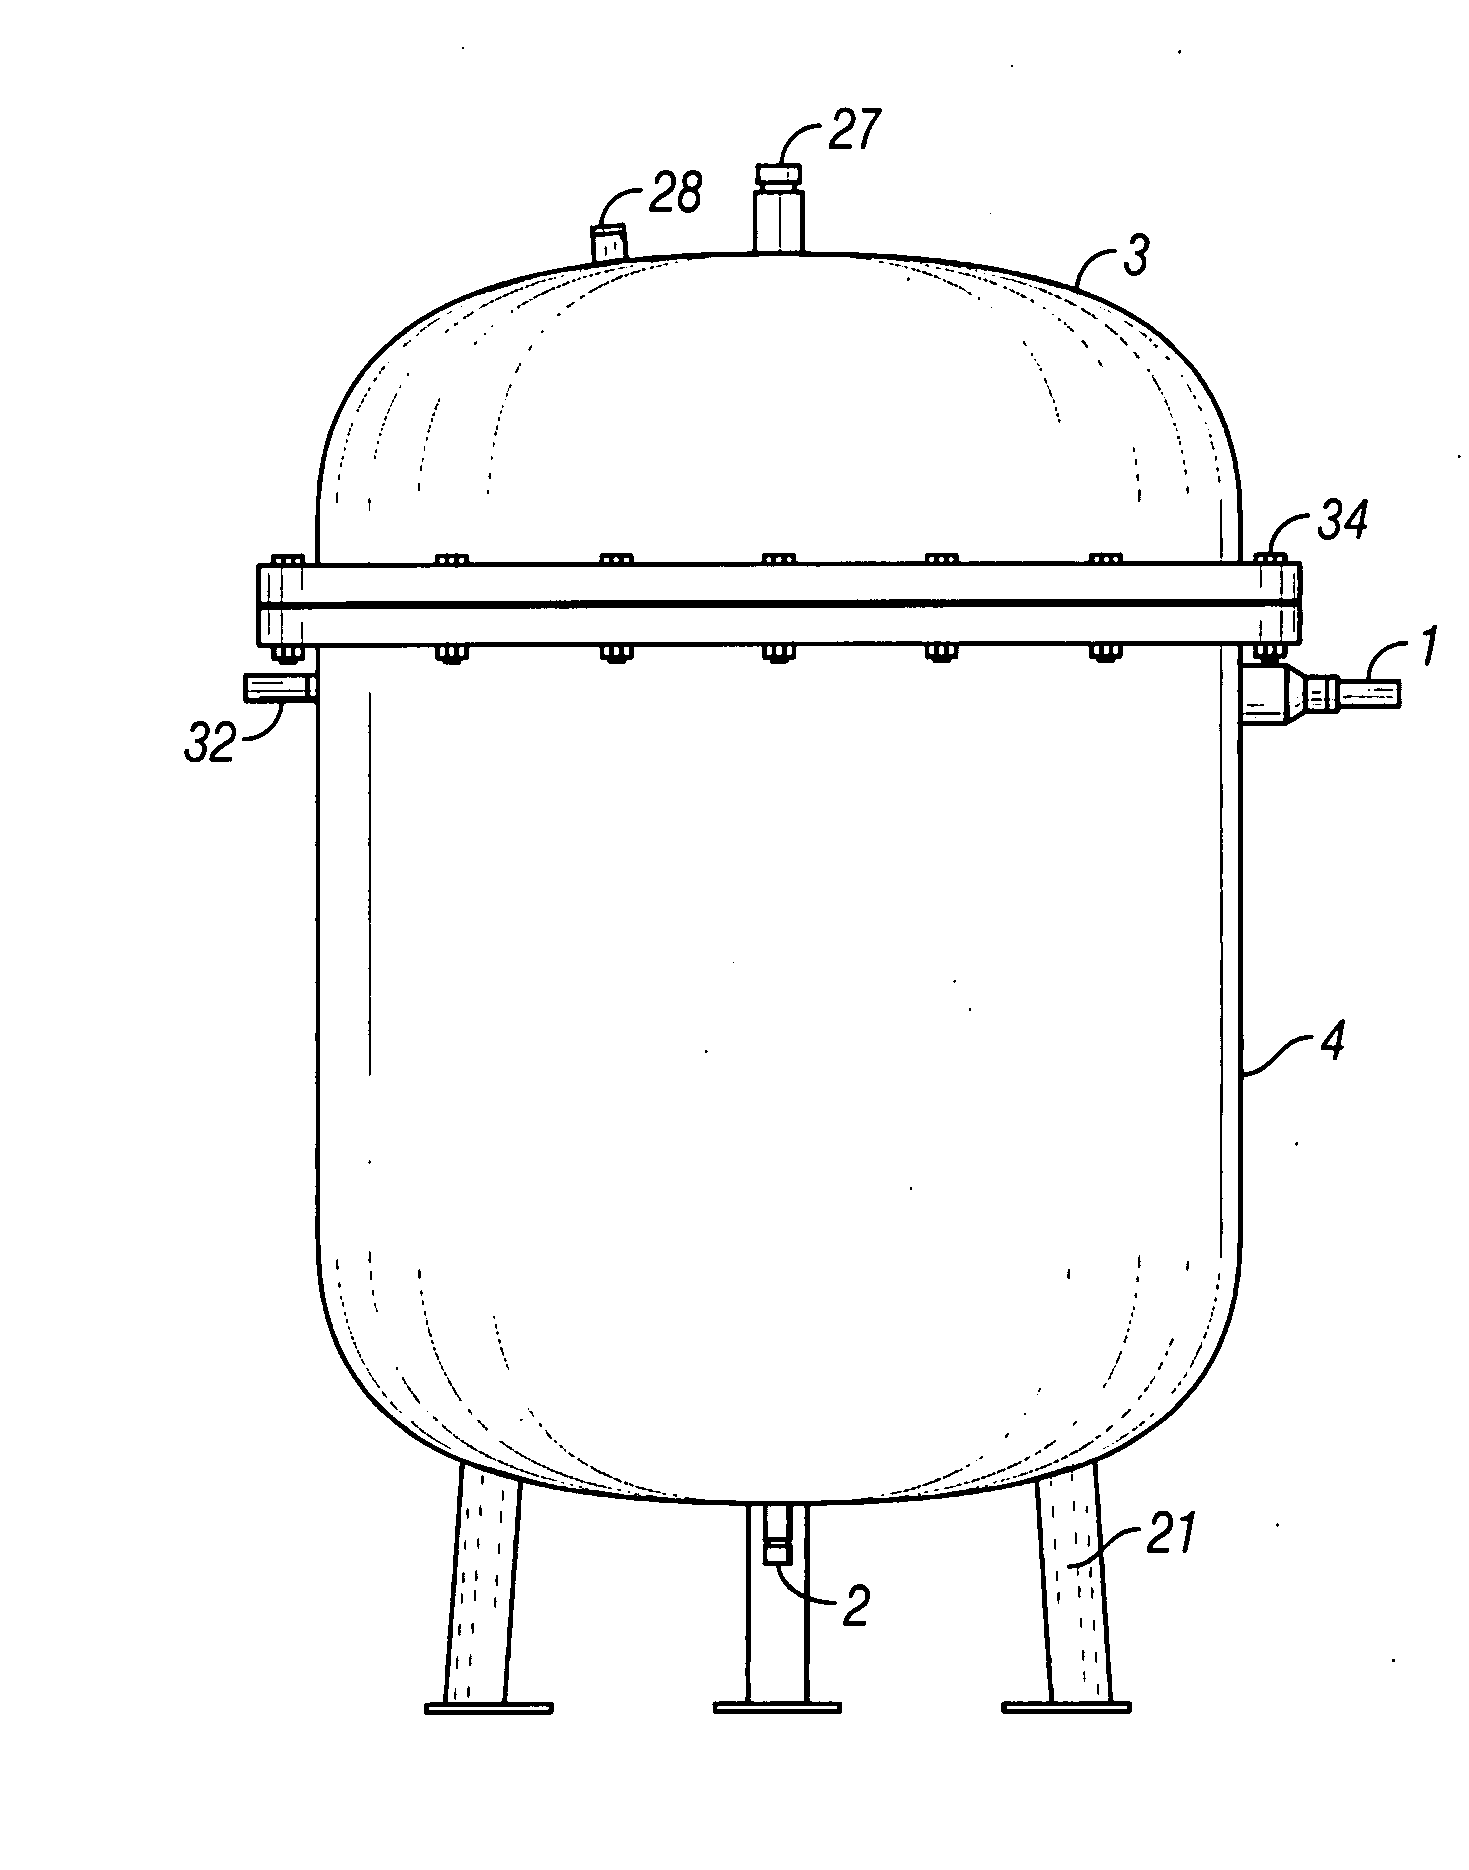 Contaminated liquids filtering apparatus